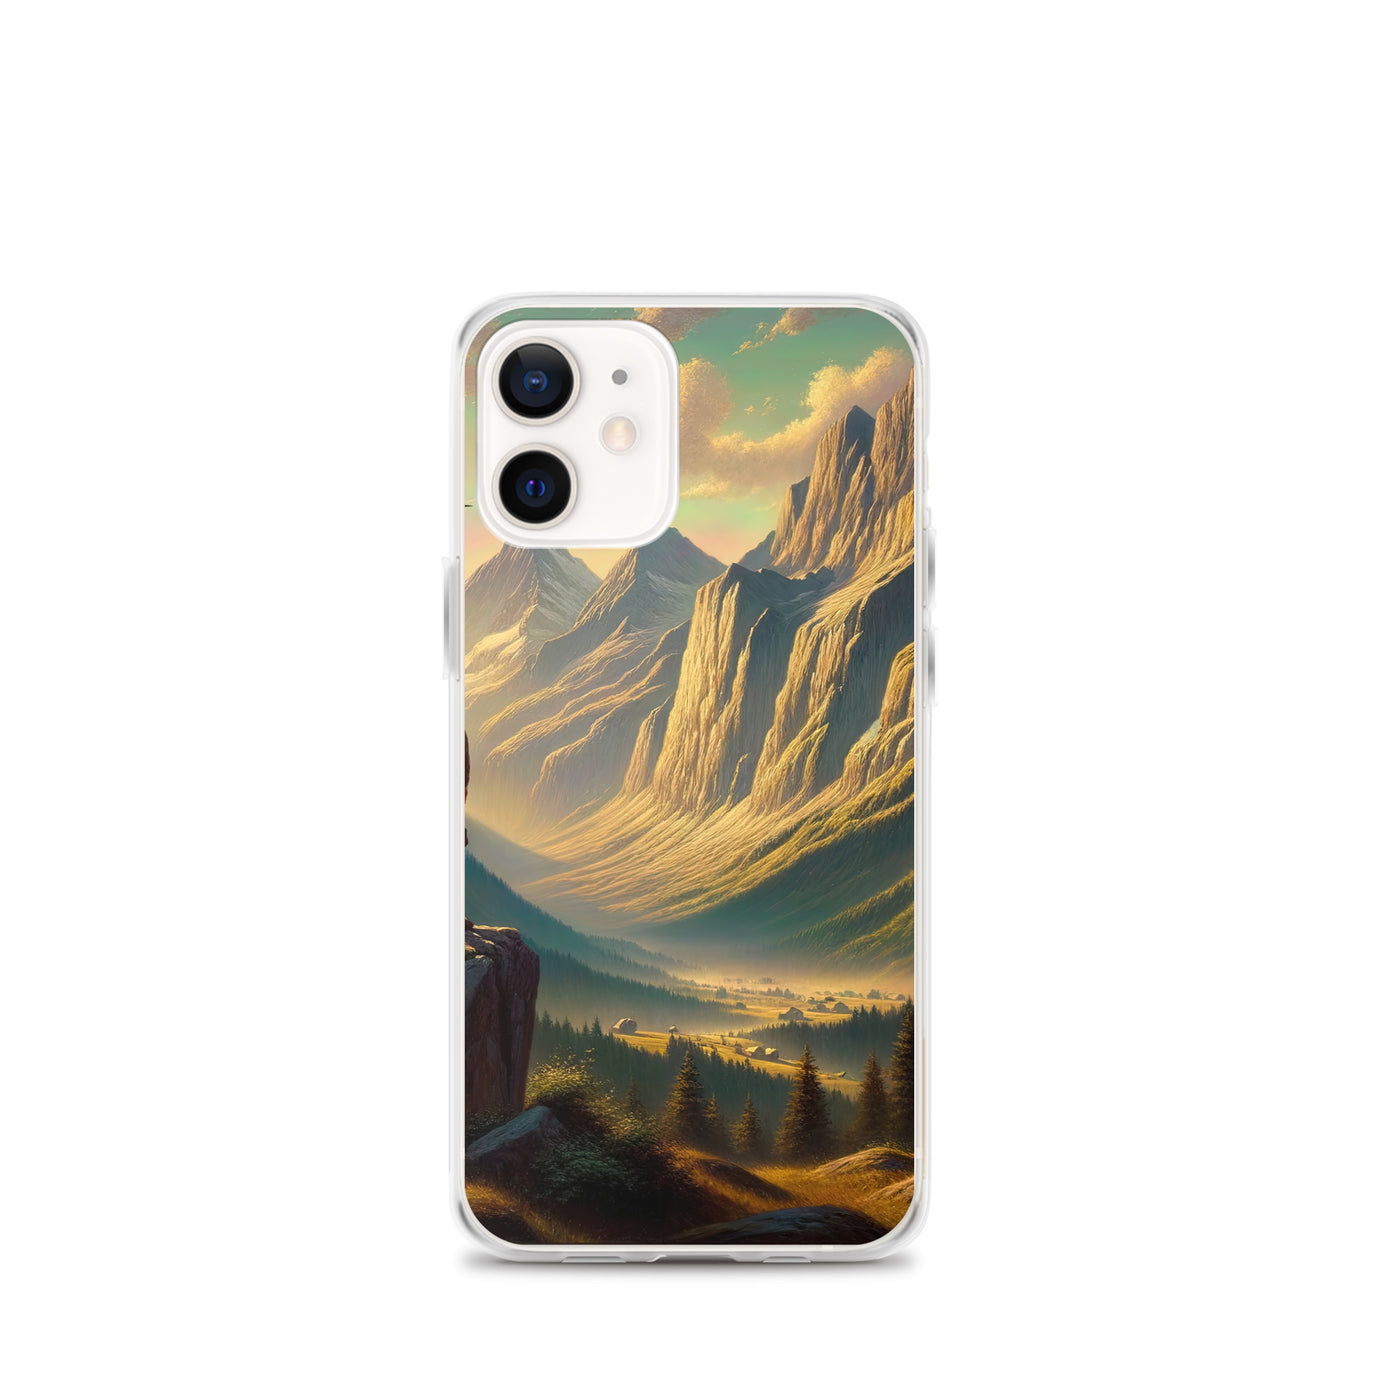 Ölgemälde eines Schweizer Wanderers in den Alpen bei goldenem Sonnenlicht - iPhone Schutzhülle (durchsichtig) wandern xxx yyy zzz iPhone 12 mini